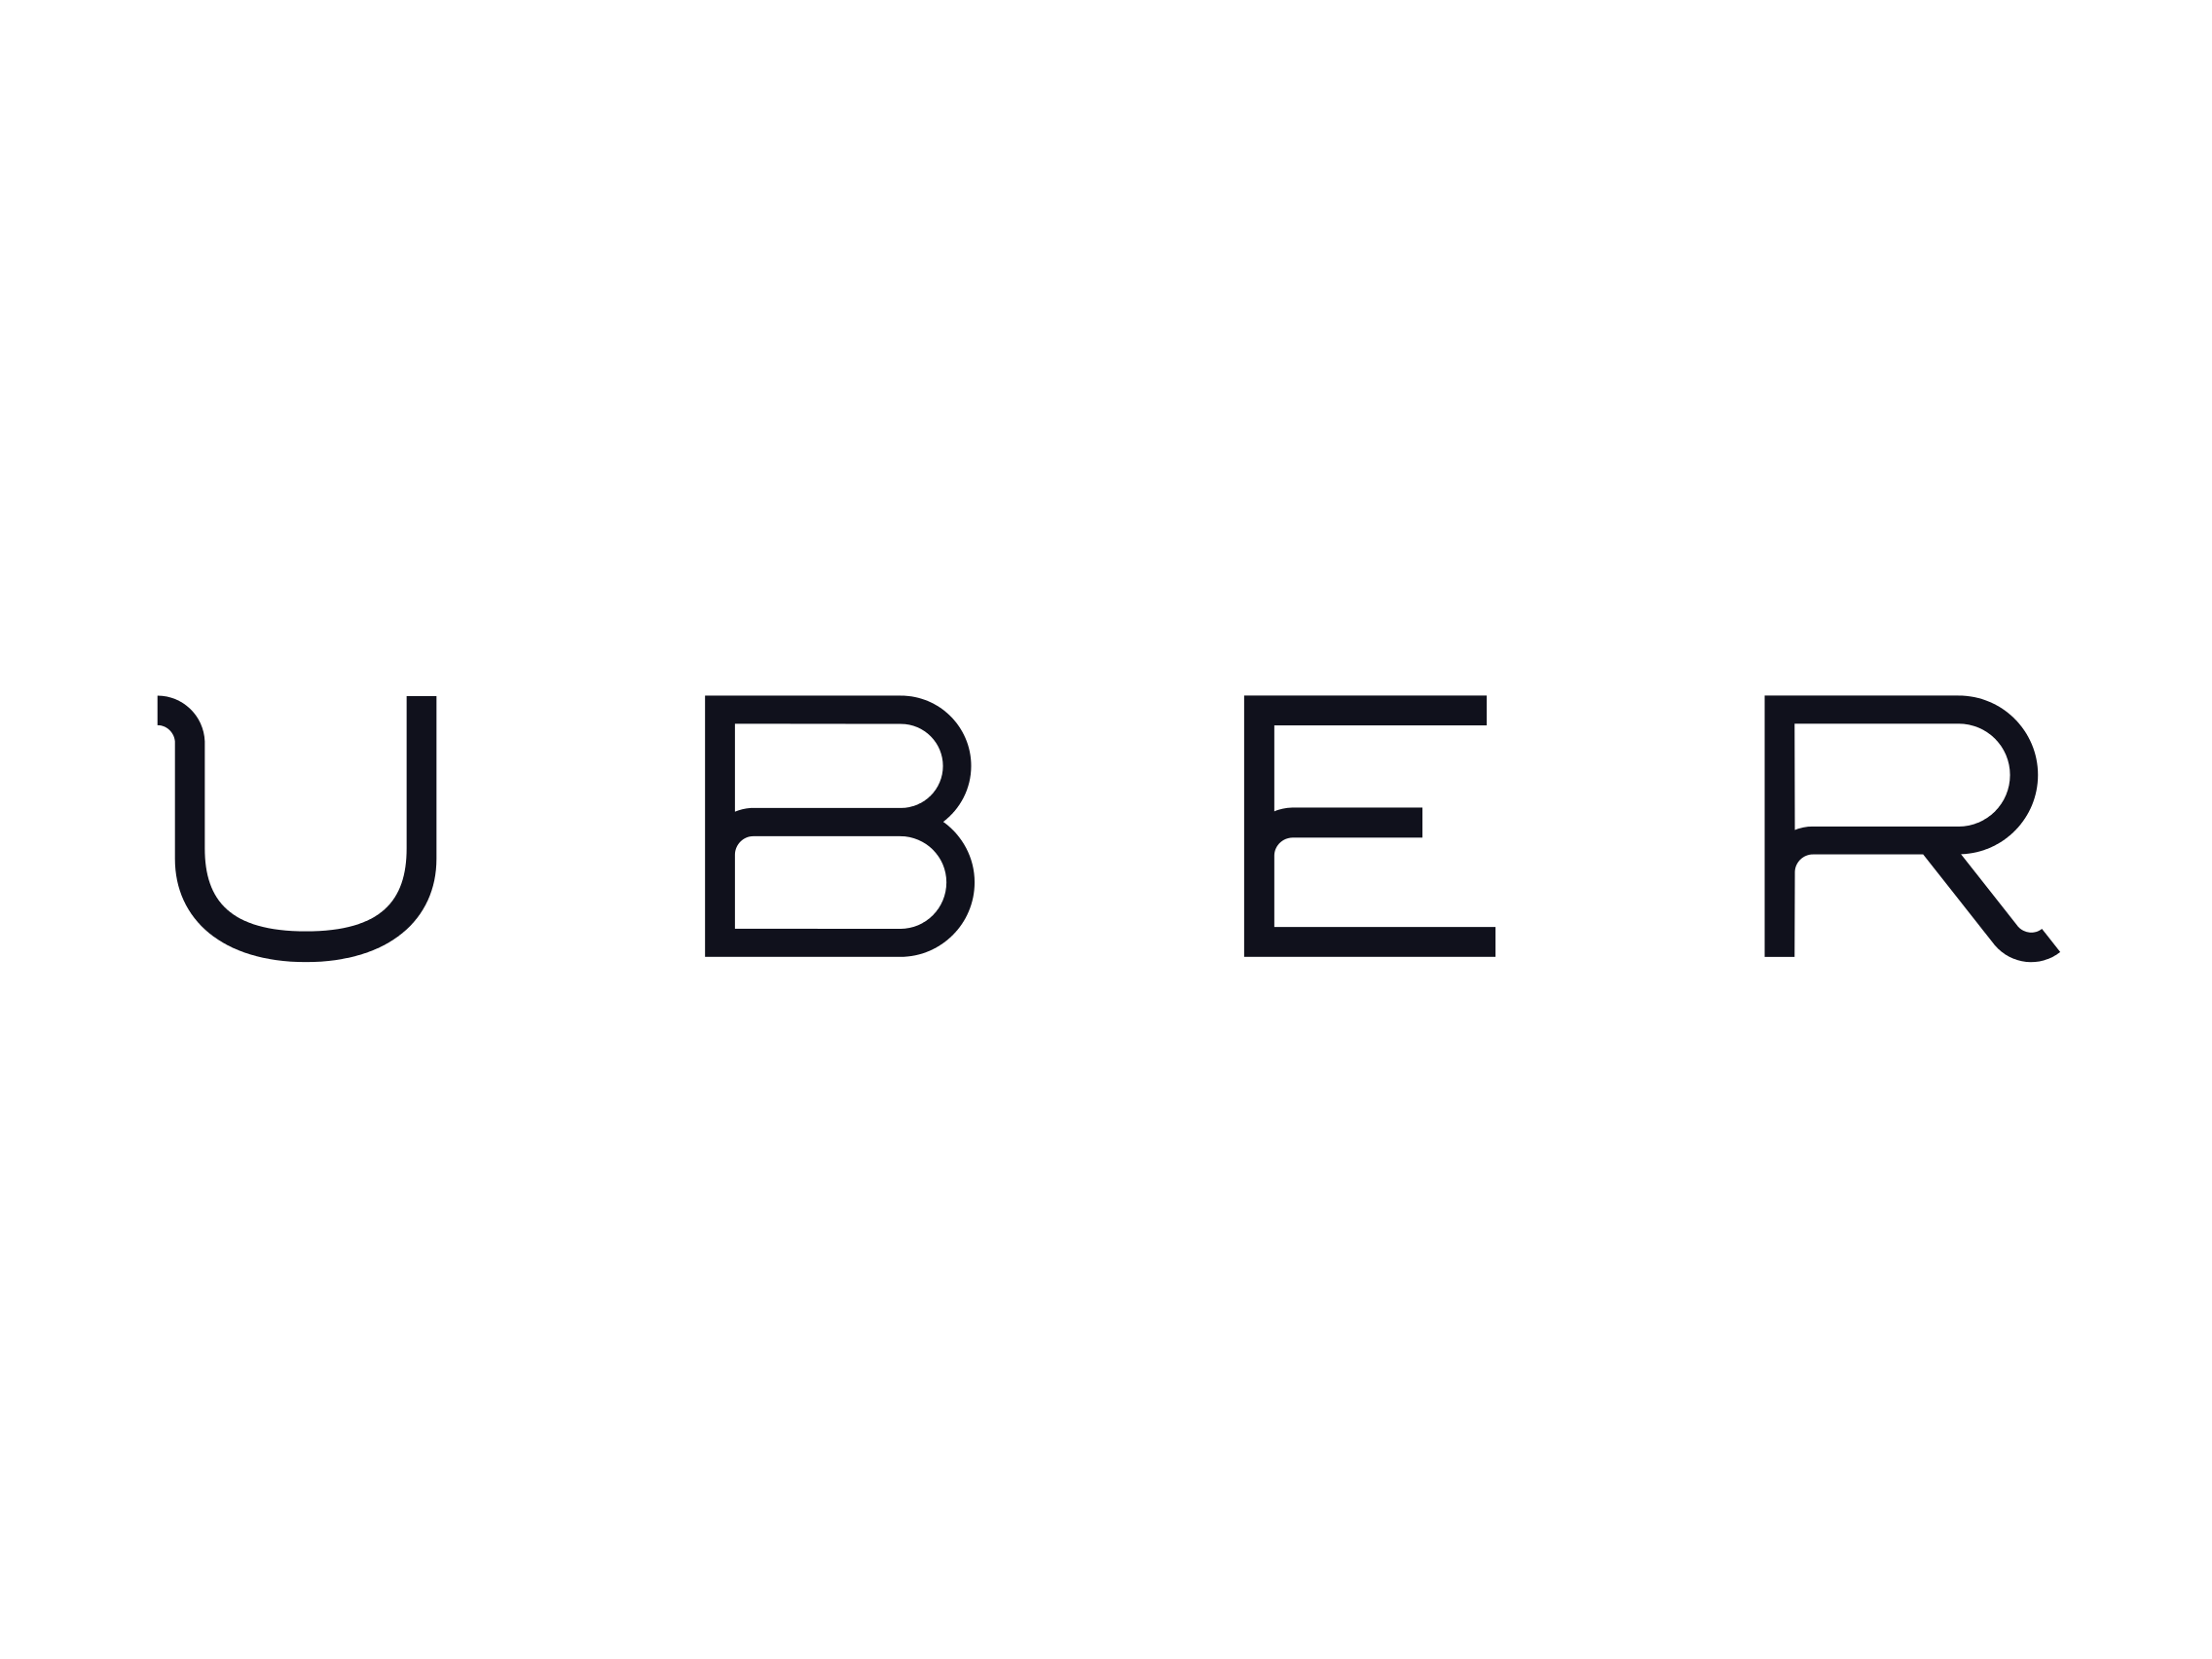 Uber logosu